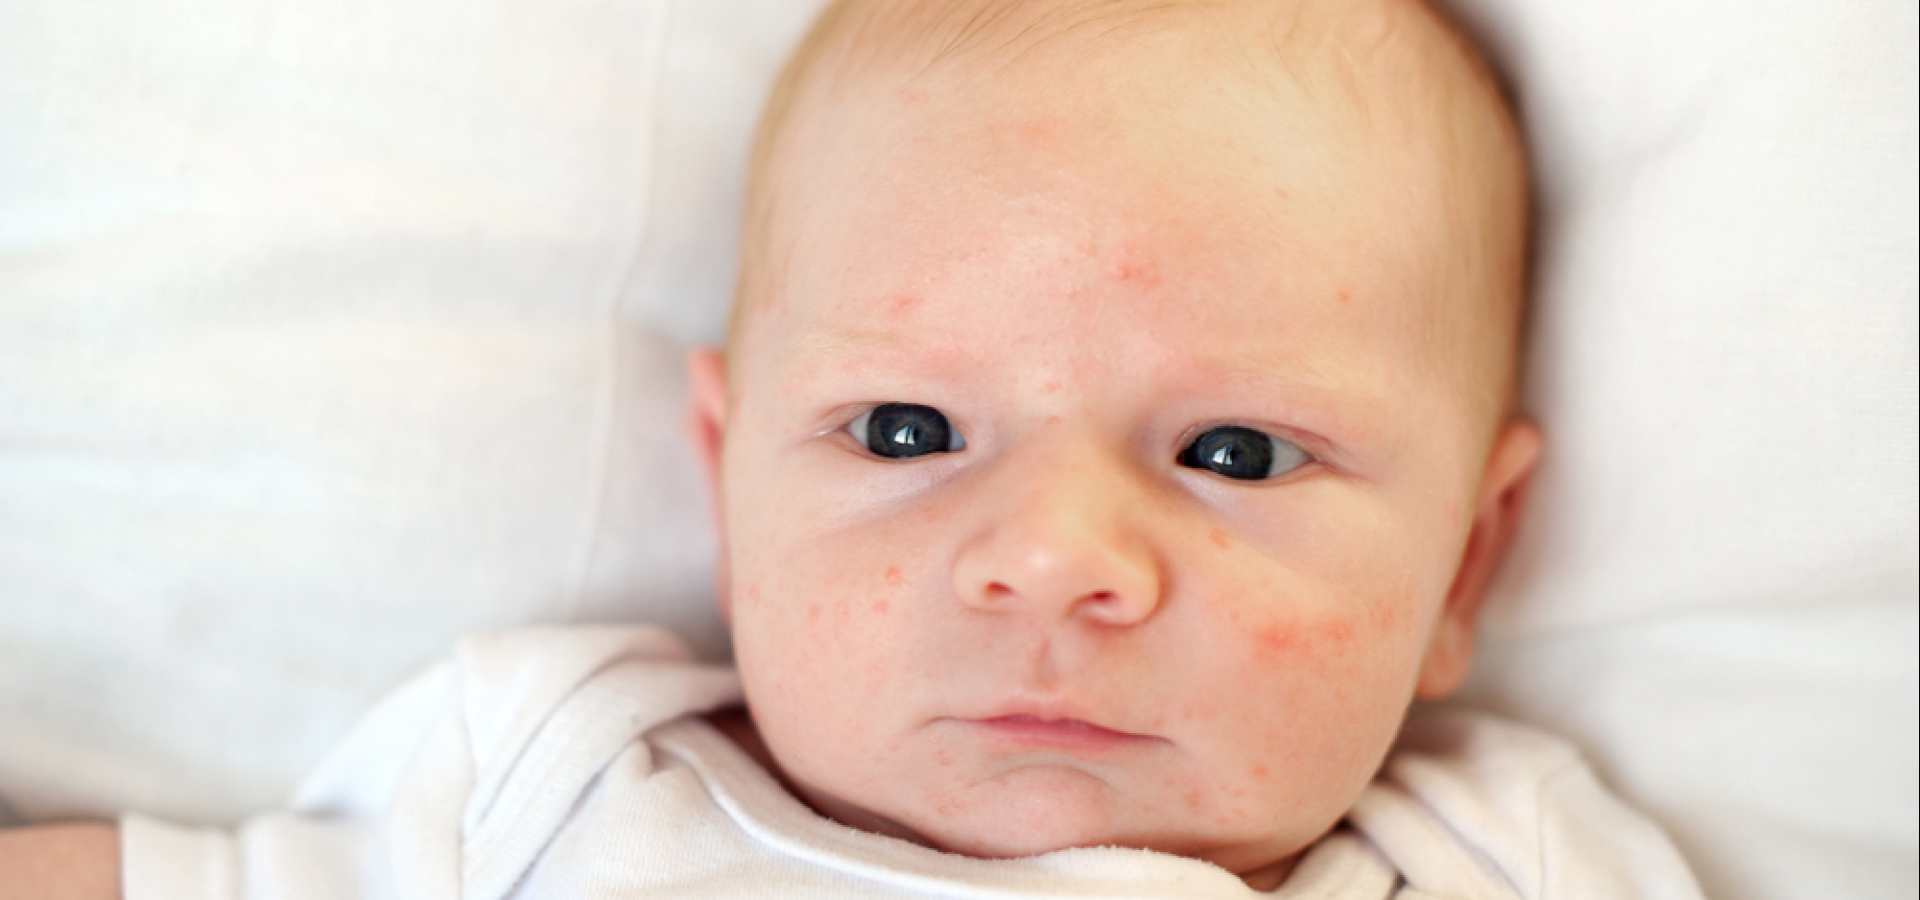 Прыщики на лице у новорожденного: разновидности, белые, красные,чем лечить, что можно делать а что нельзя